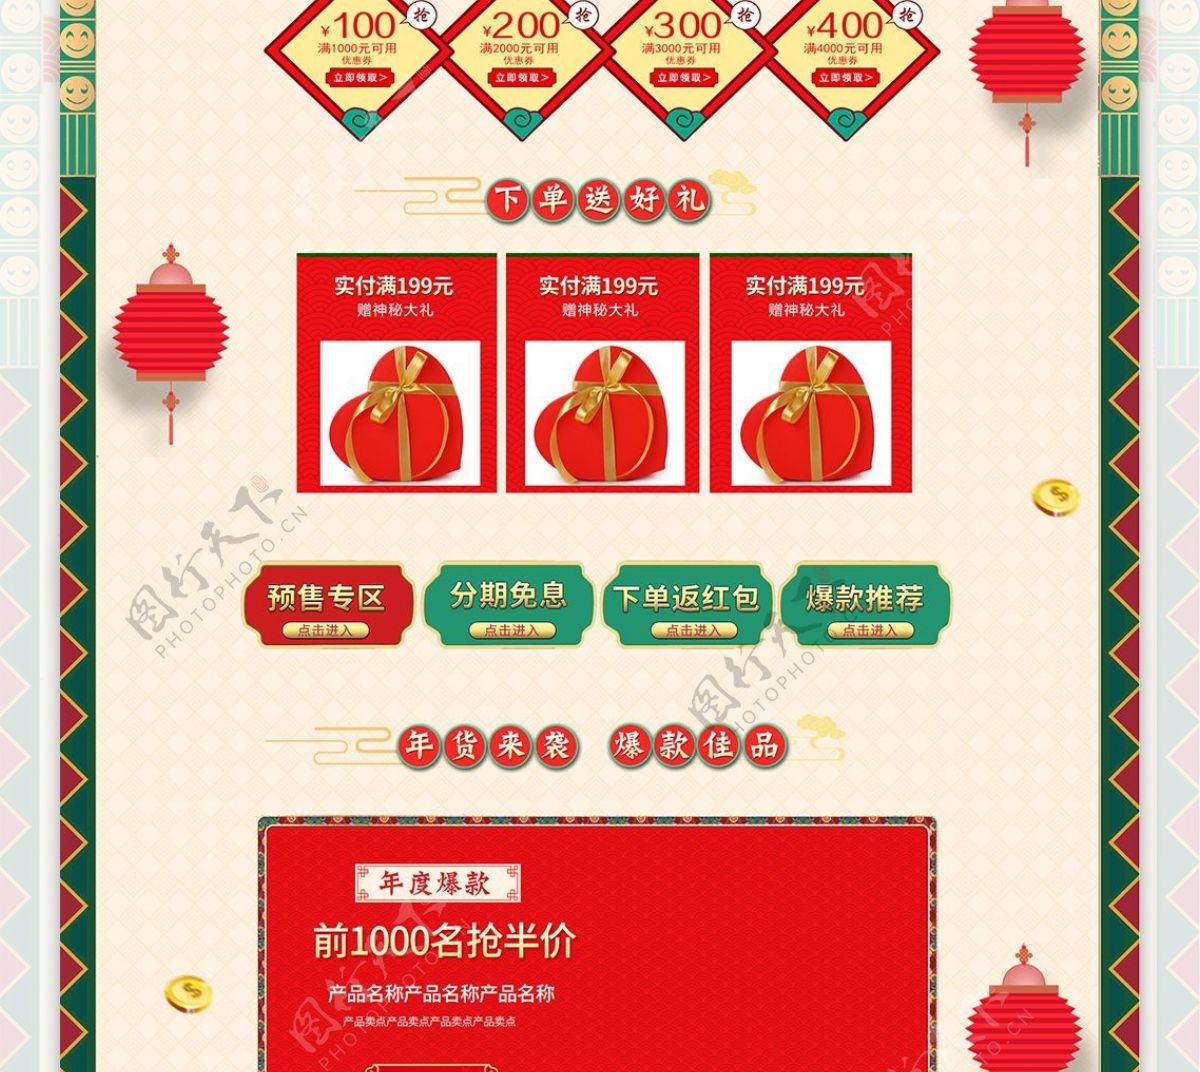 红金色复古新年年货节年货盛宴淘宝活动首页